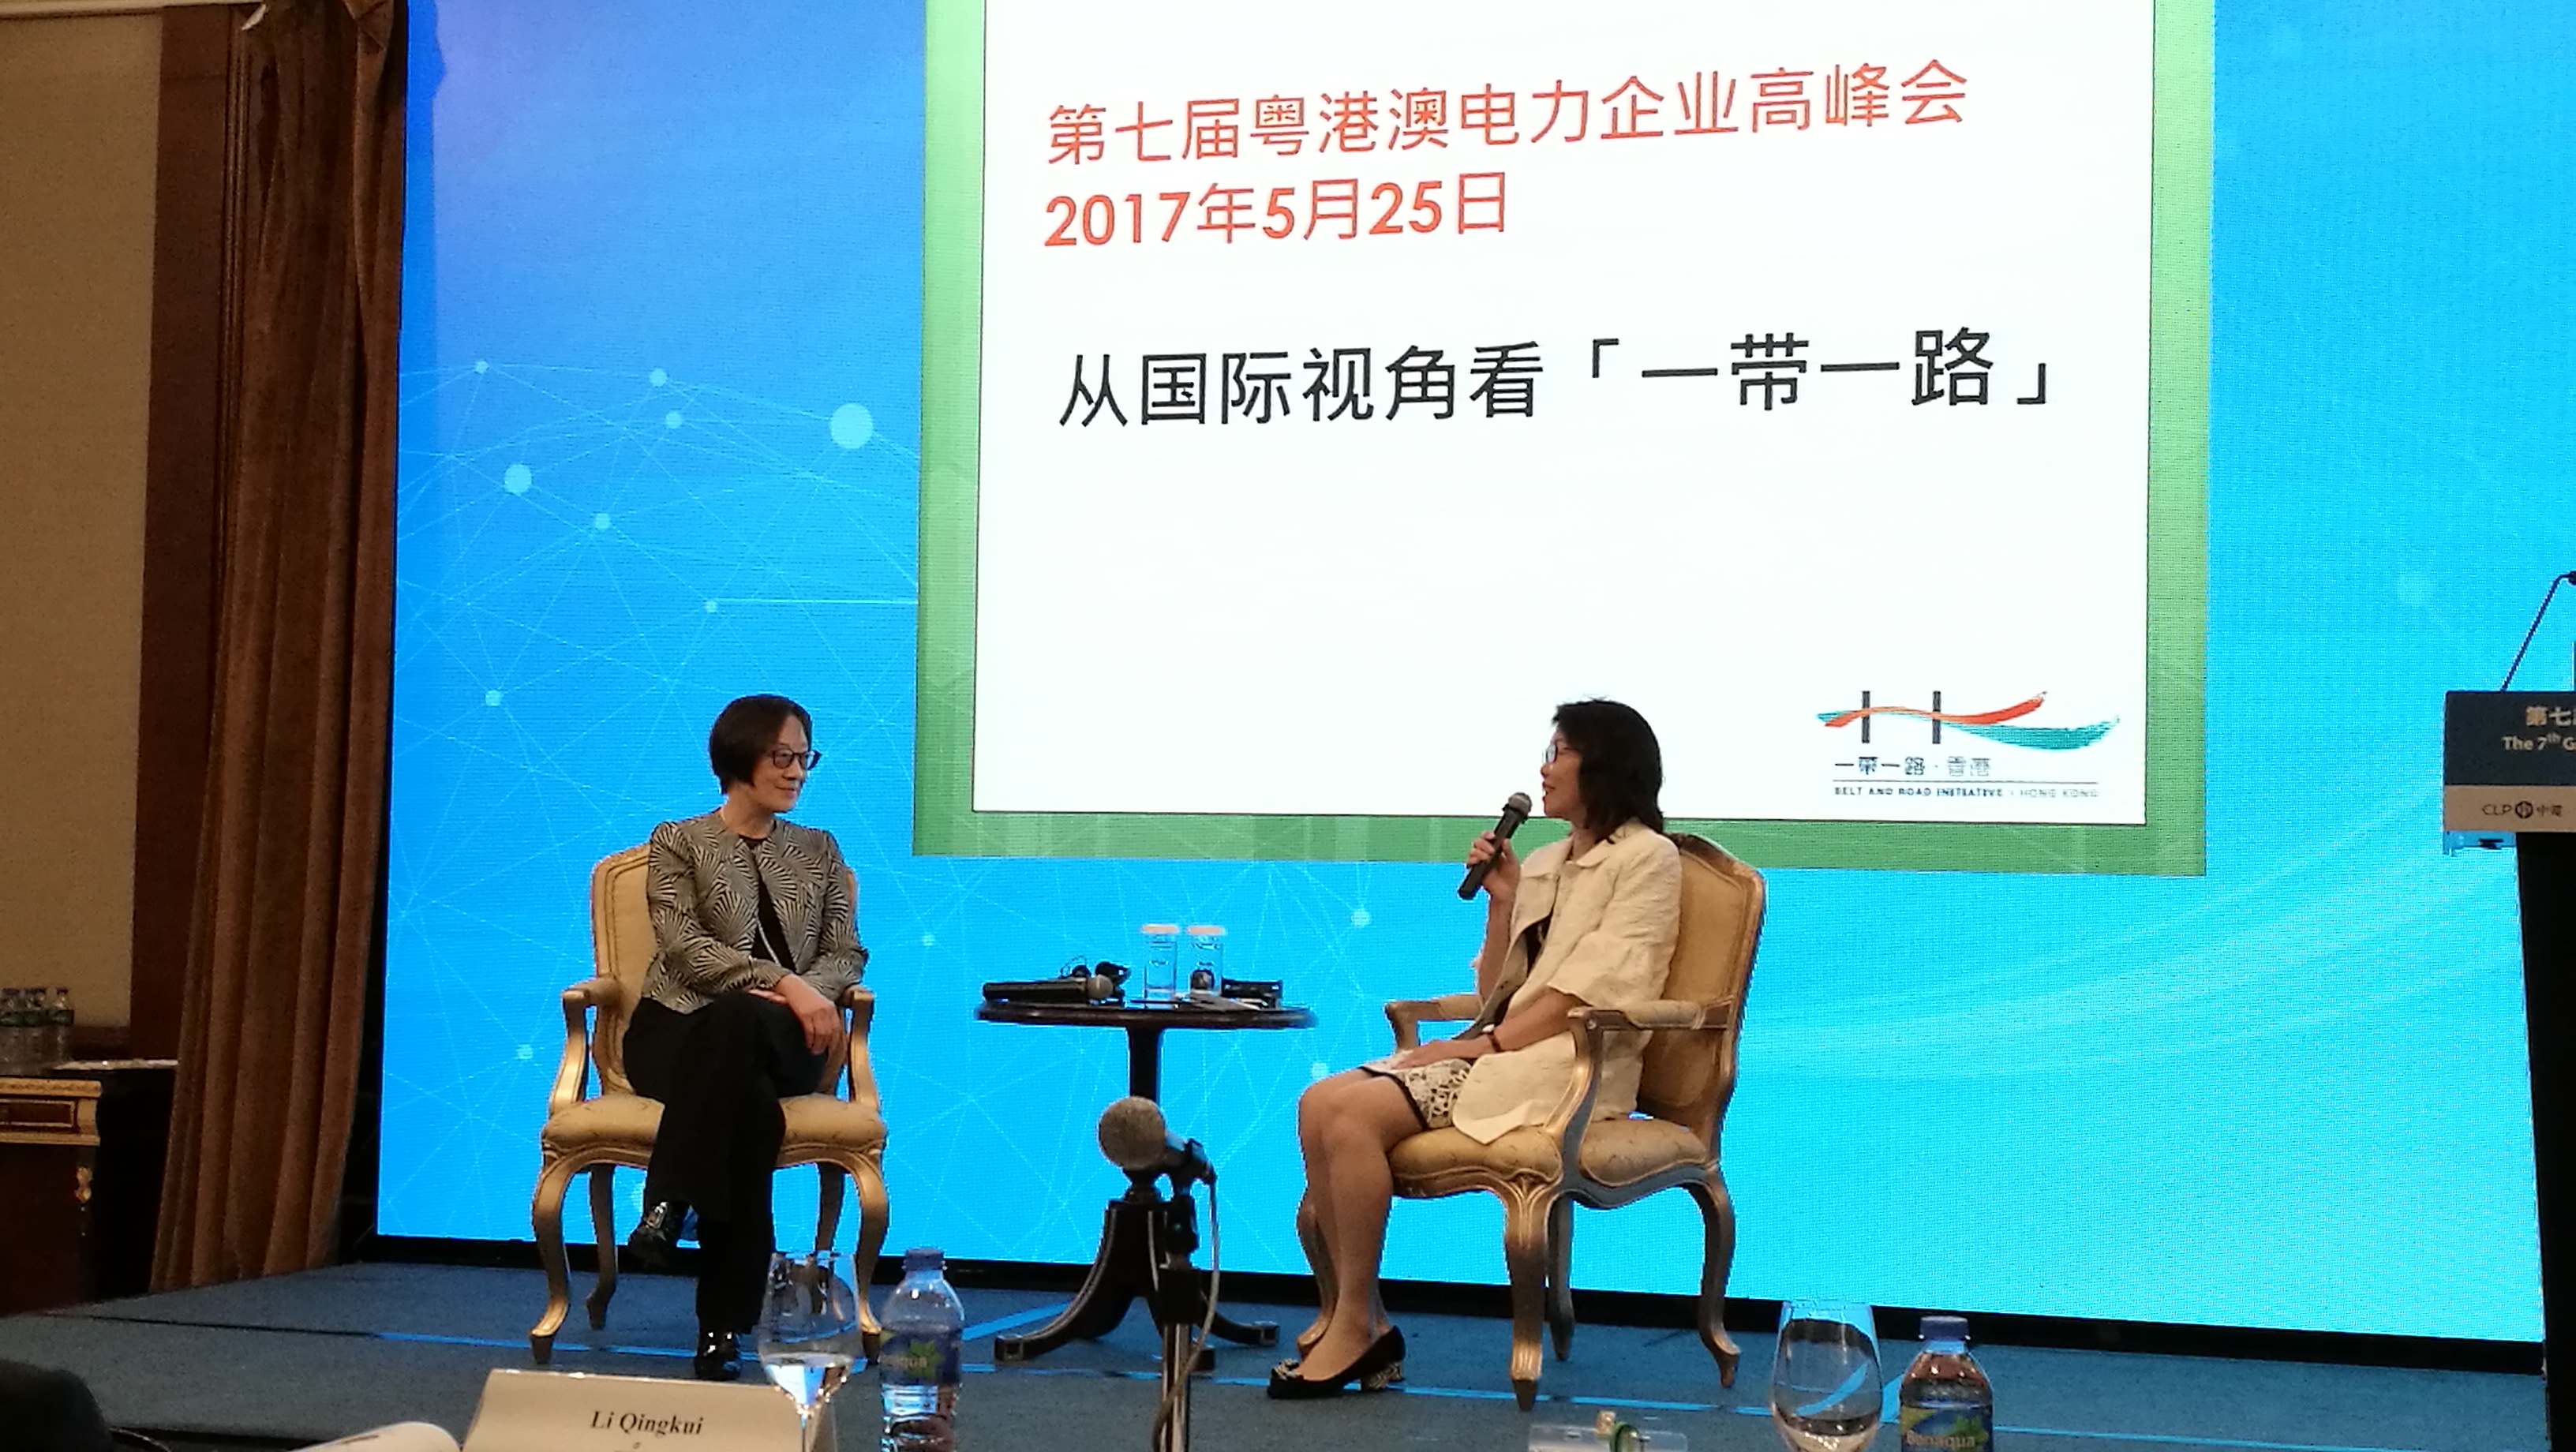 「一帶一路」專員（左）今日（五月二十五日）出席第七屆粵港澳電力企業高峰會，以 “從國際視角看「一帶一路」” 為題進行演講，並在演講後參與中華電力副主席阮蘇少湄女士（右）主持的答問討論環節。